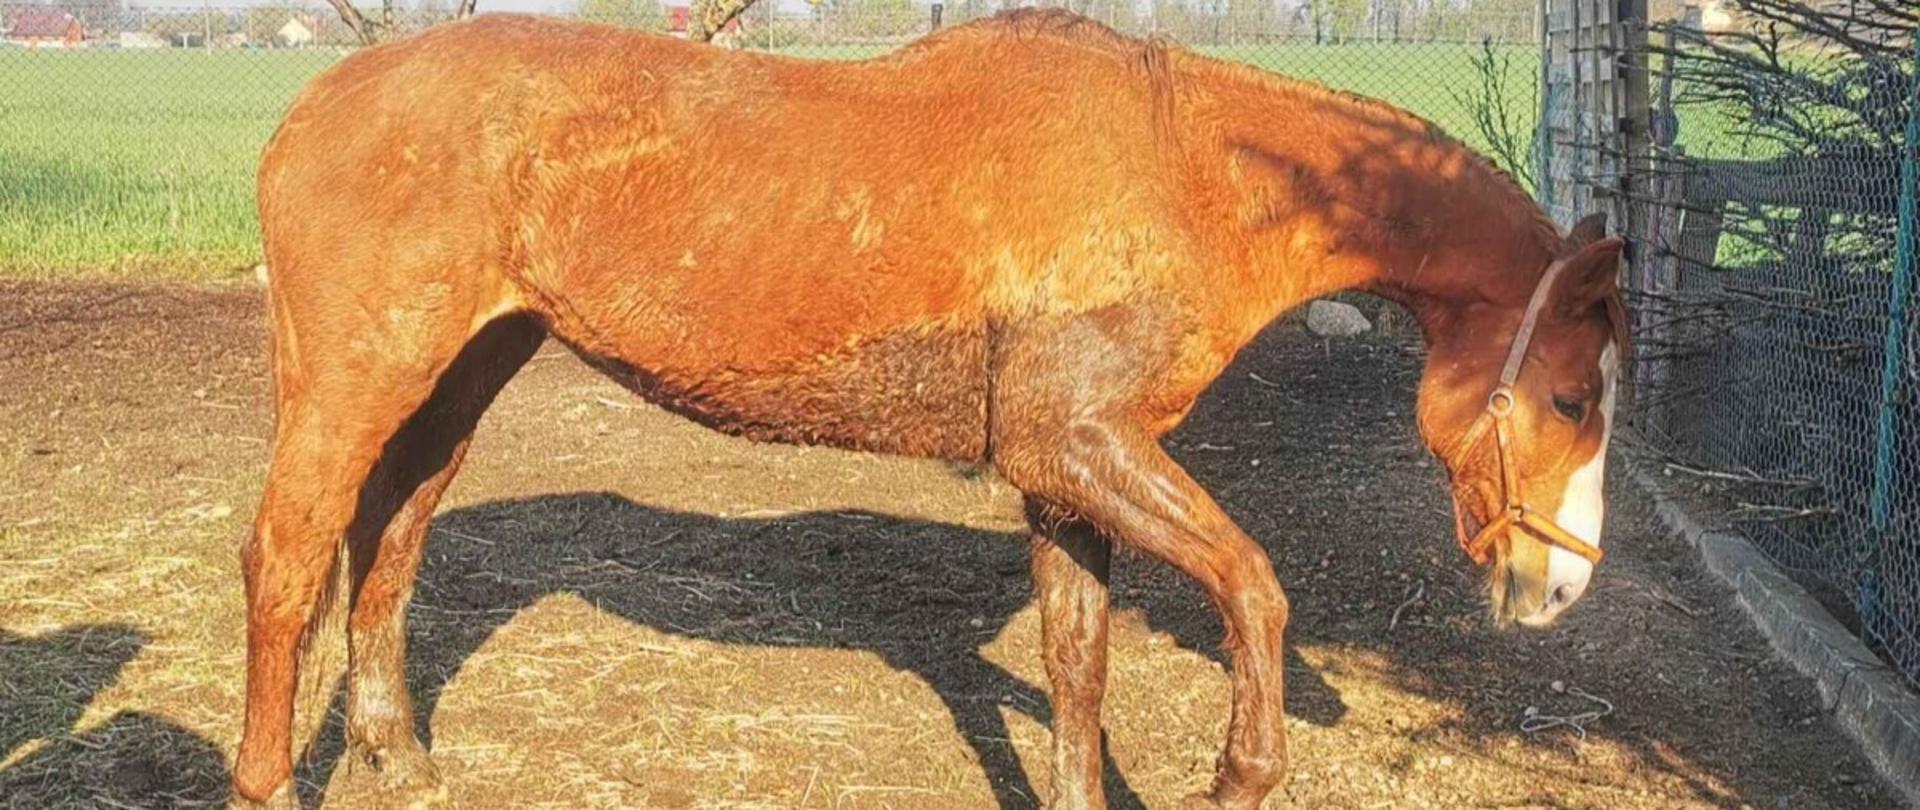 Koń po wyjęciu z błotnistej pułapki trafił pod opiekę właścicieli